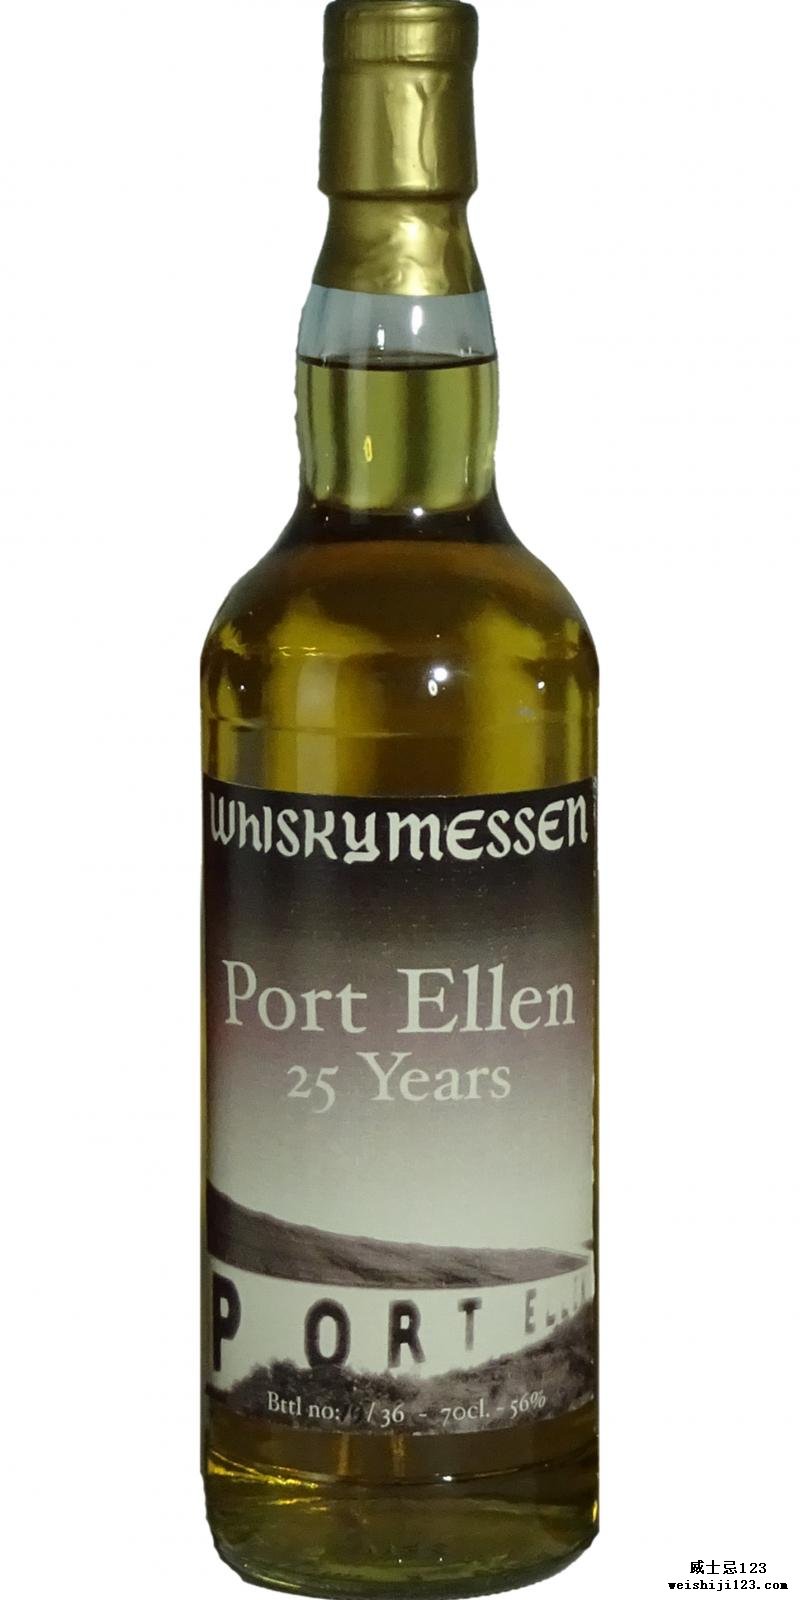 Port Ellen 25-year-old Wm.dk